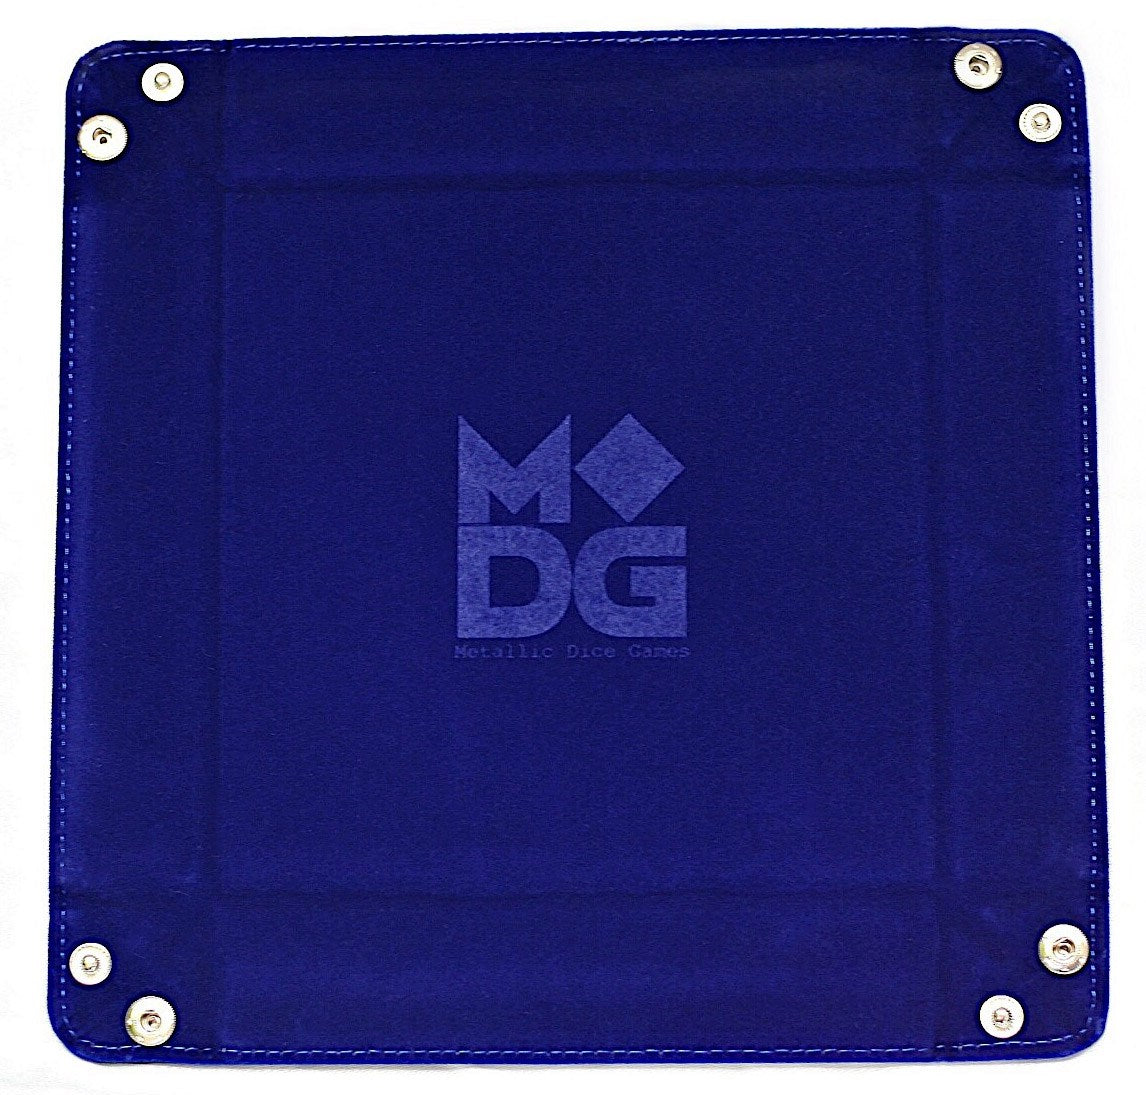 MDG Dice Tray - Blue | Grognard Games